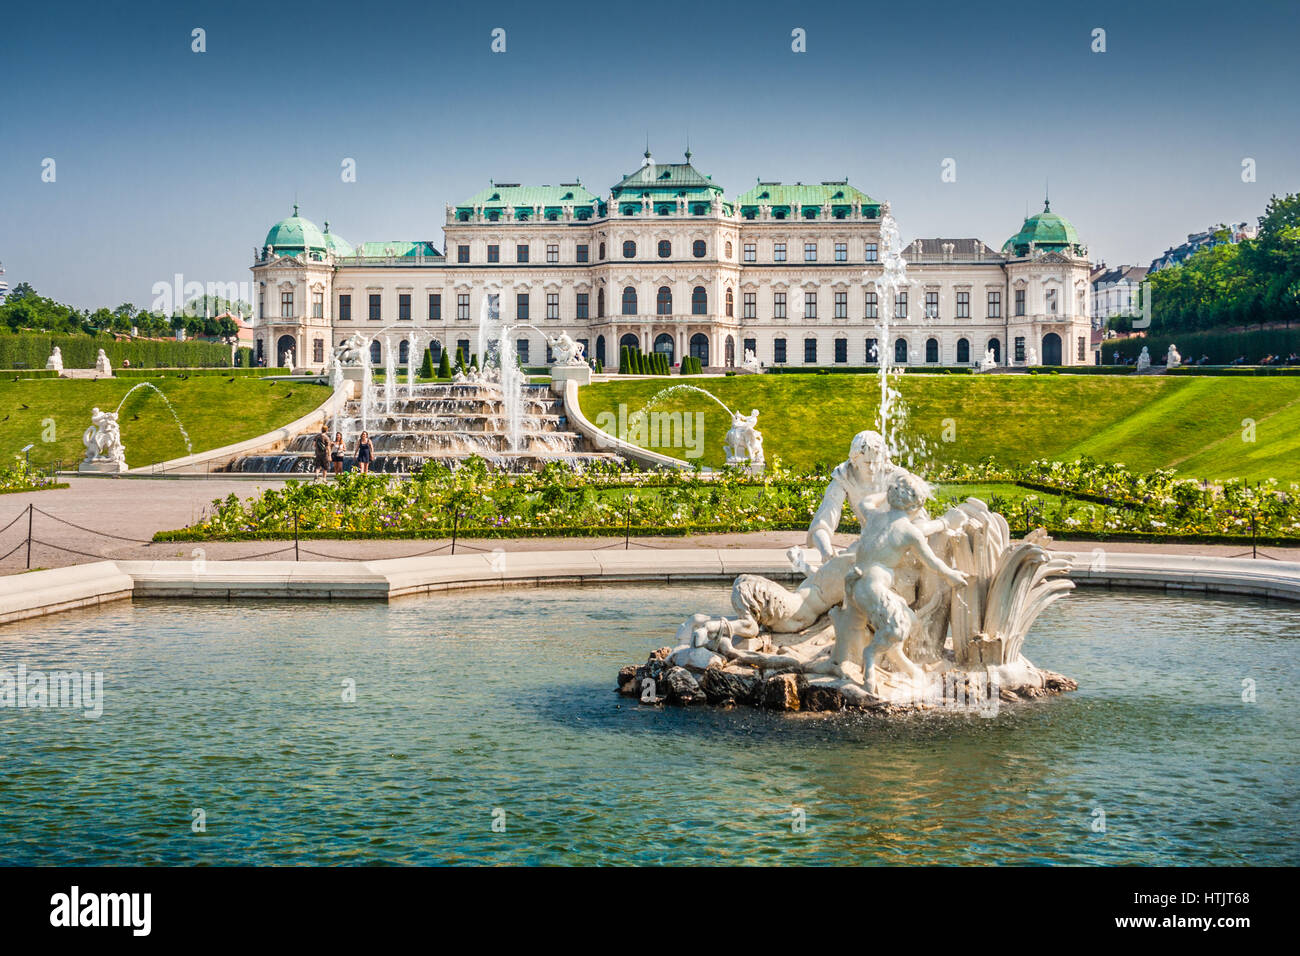 Bellissima vista del famoso Schloss Belvedere costruito da Johann Lukas von Hildebrandt come una residenza estiva per il principe Eugenio di Savoia, a Vienna, in Austria Foto Stock